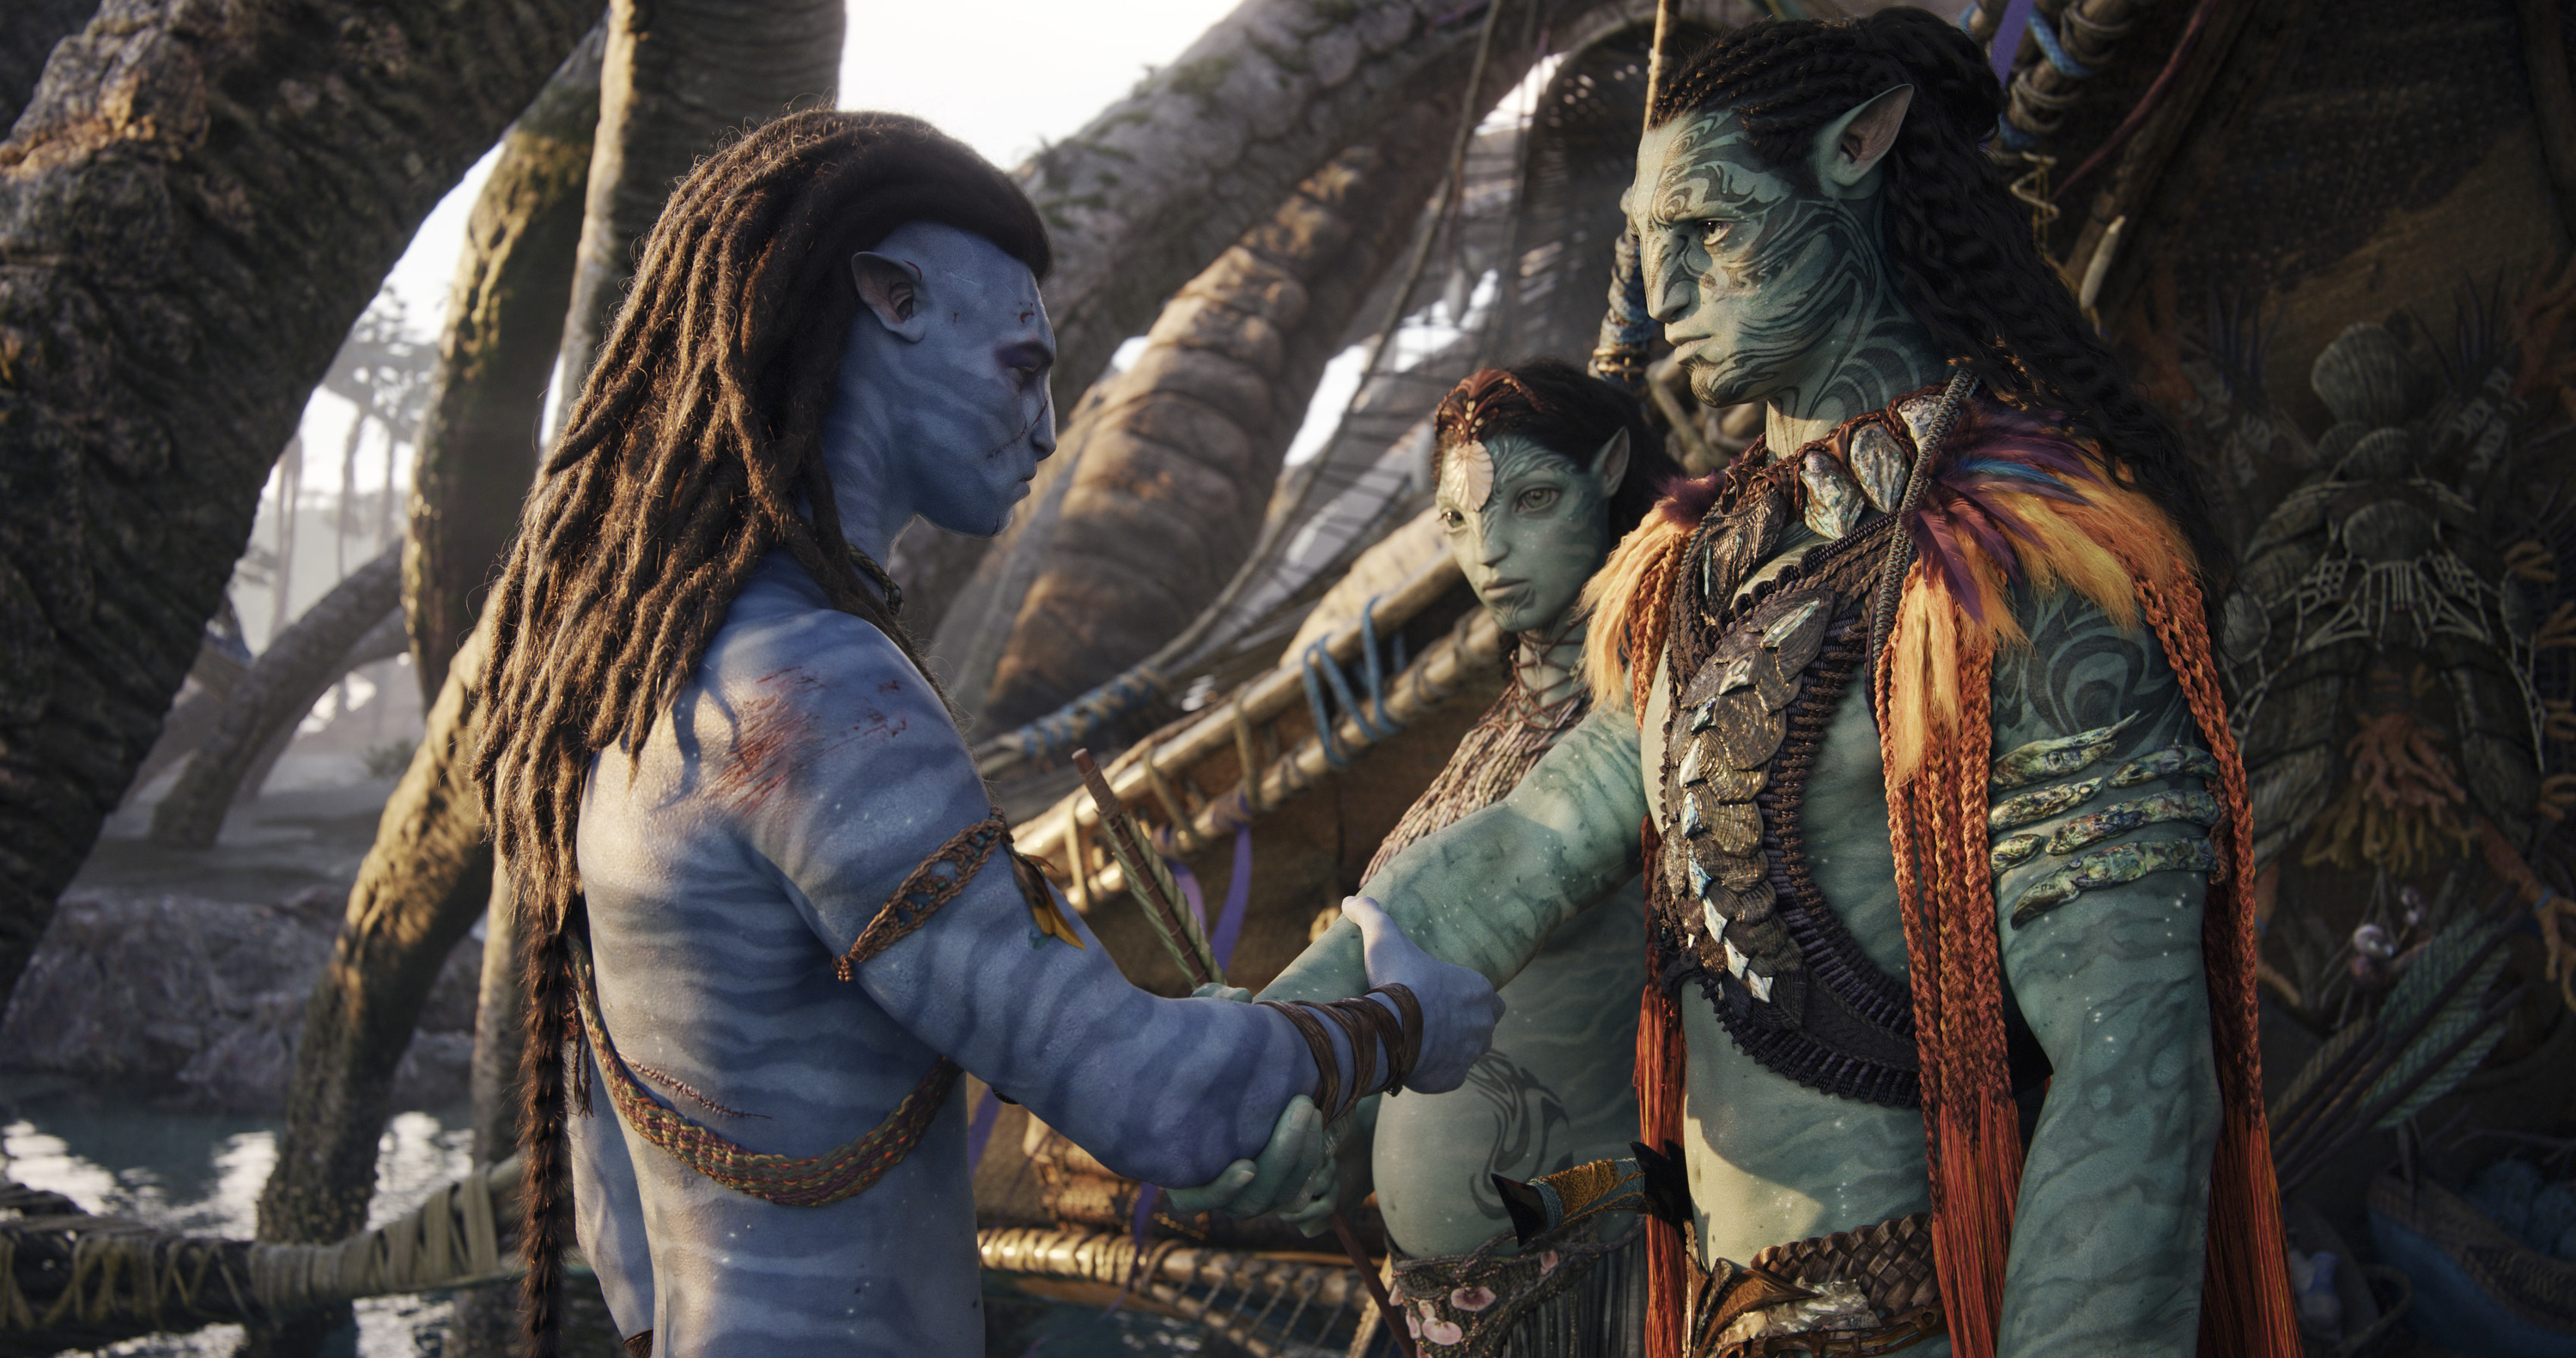 "Avatar: Der Weg des Wassers" hat in 10 Tagen 850 Millionen Dollar an den Kinokassen eingespielt - bis Silvester wird das Einspielergebnis 1 Milliarde Dollar erreichen